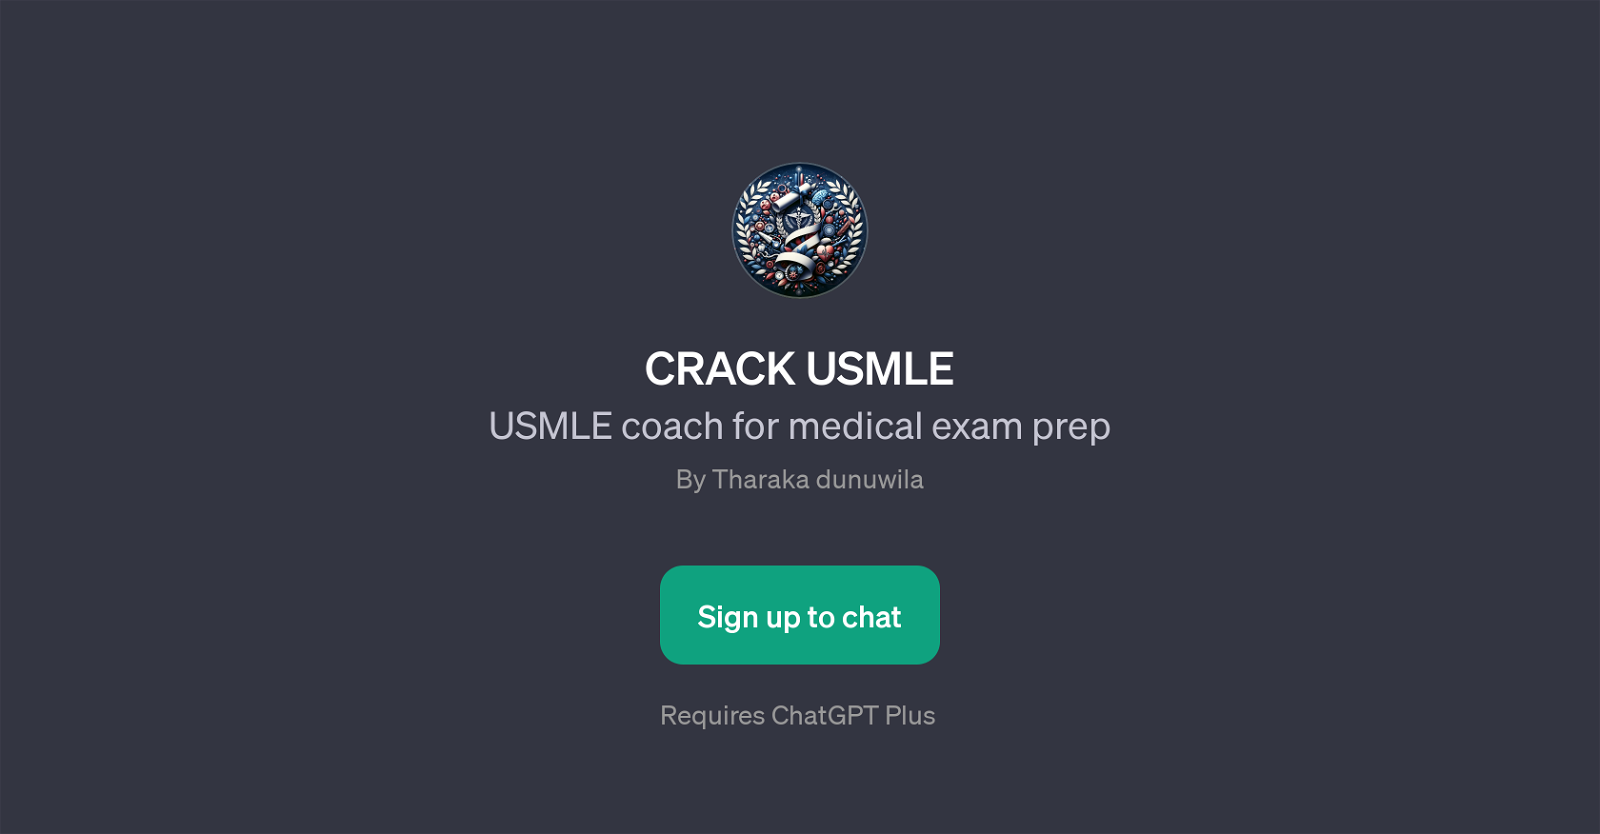 CRACK USMLE website